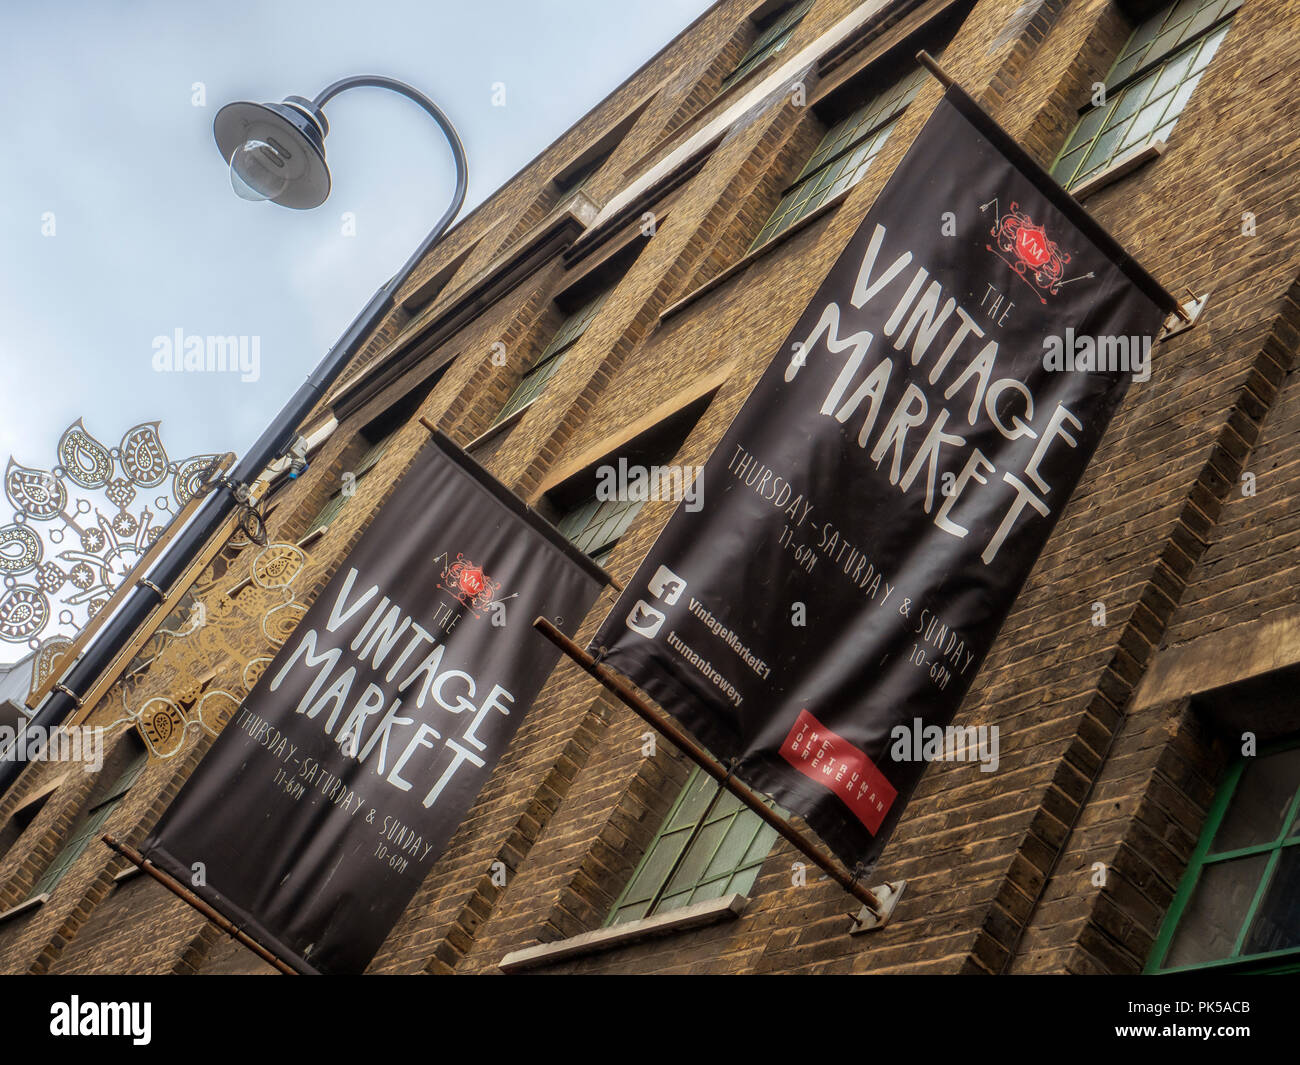 LONDRA, Regno Unito - 09 SETTEMBRE 2018: Indicazioni per il Vintage Market (noto anche come Up Market) nell'Old Truman Brewery Building a Brick Lane Foto Stock